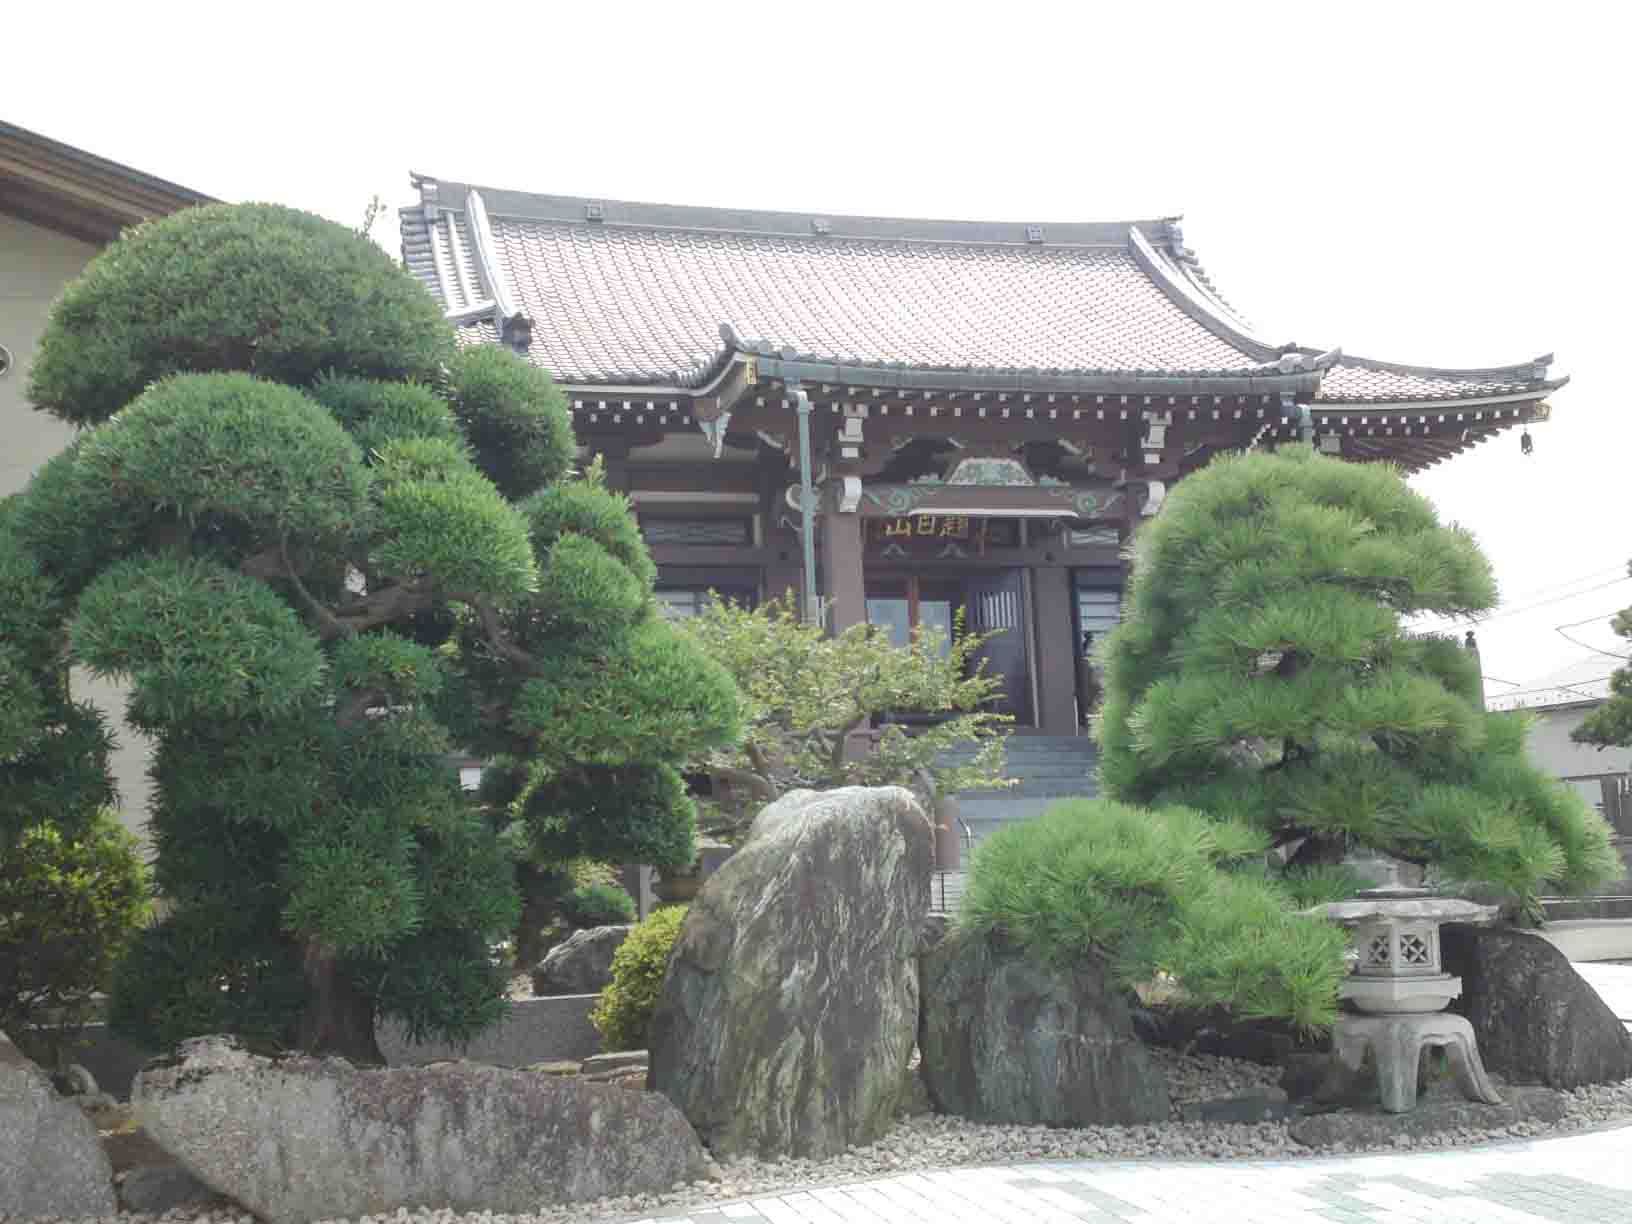 pine trees of Daimokusan Jounji Temple